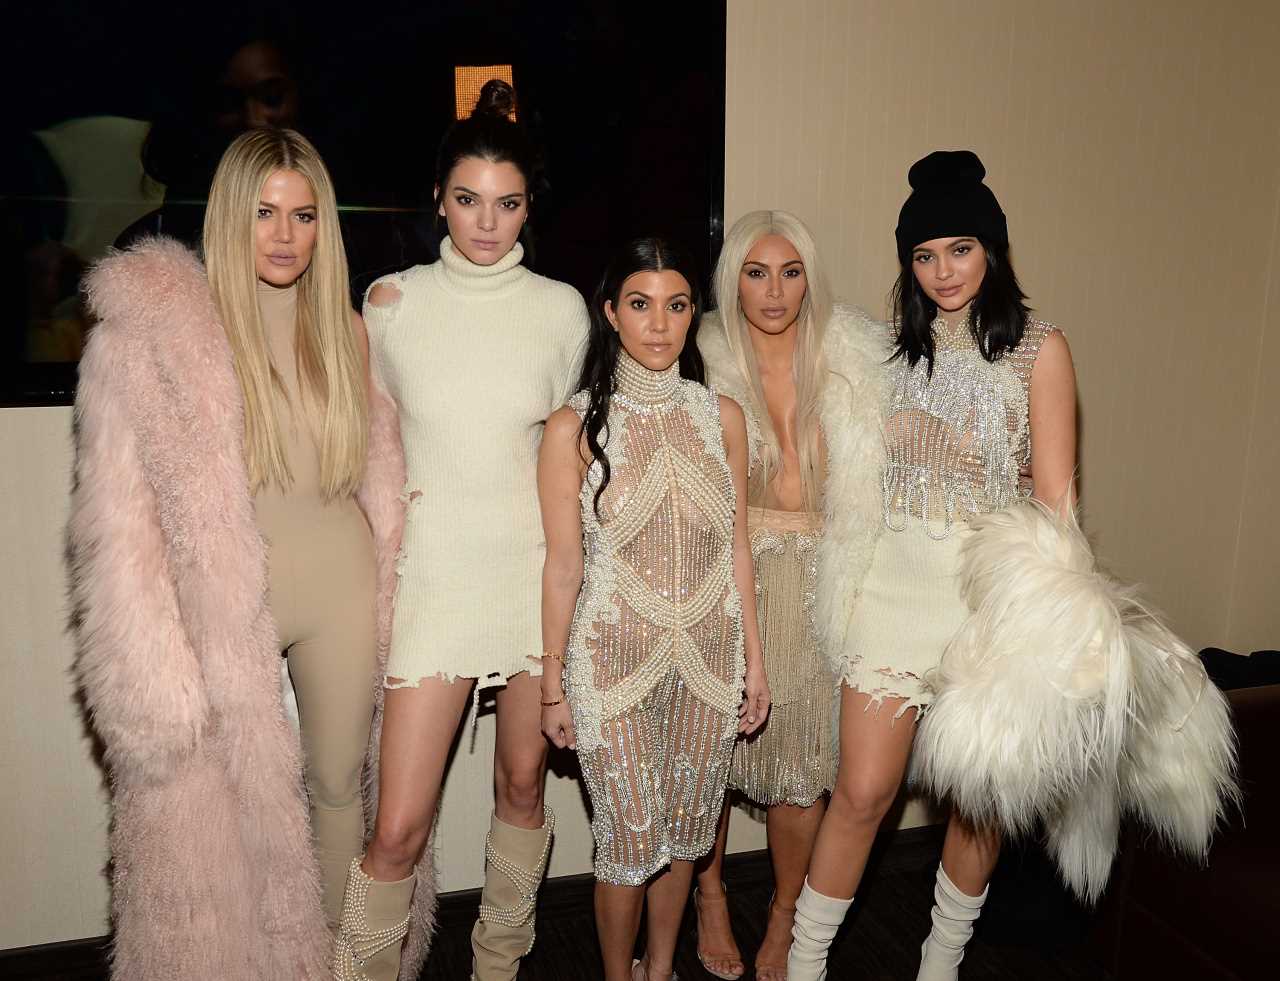 Rodzina Kardashian Jenner - wszystko co musisz wiedzieć o tej słynnej rodzinie